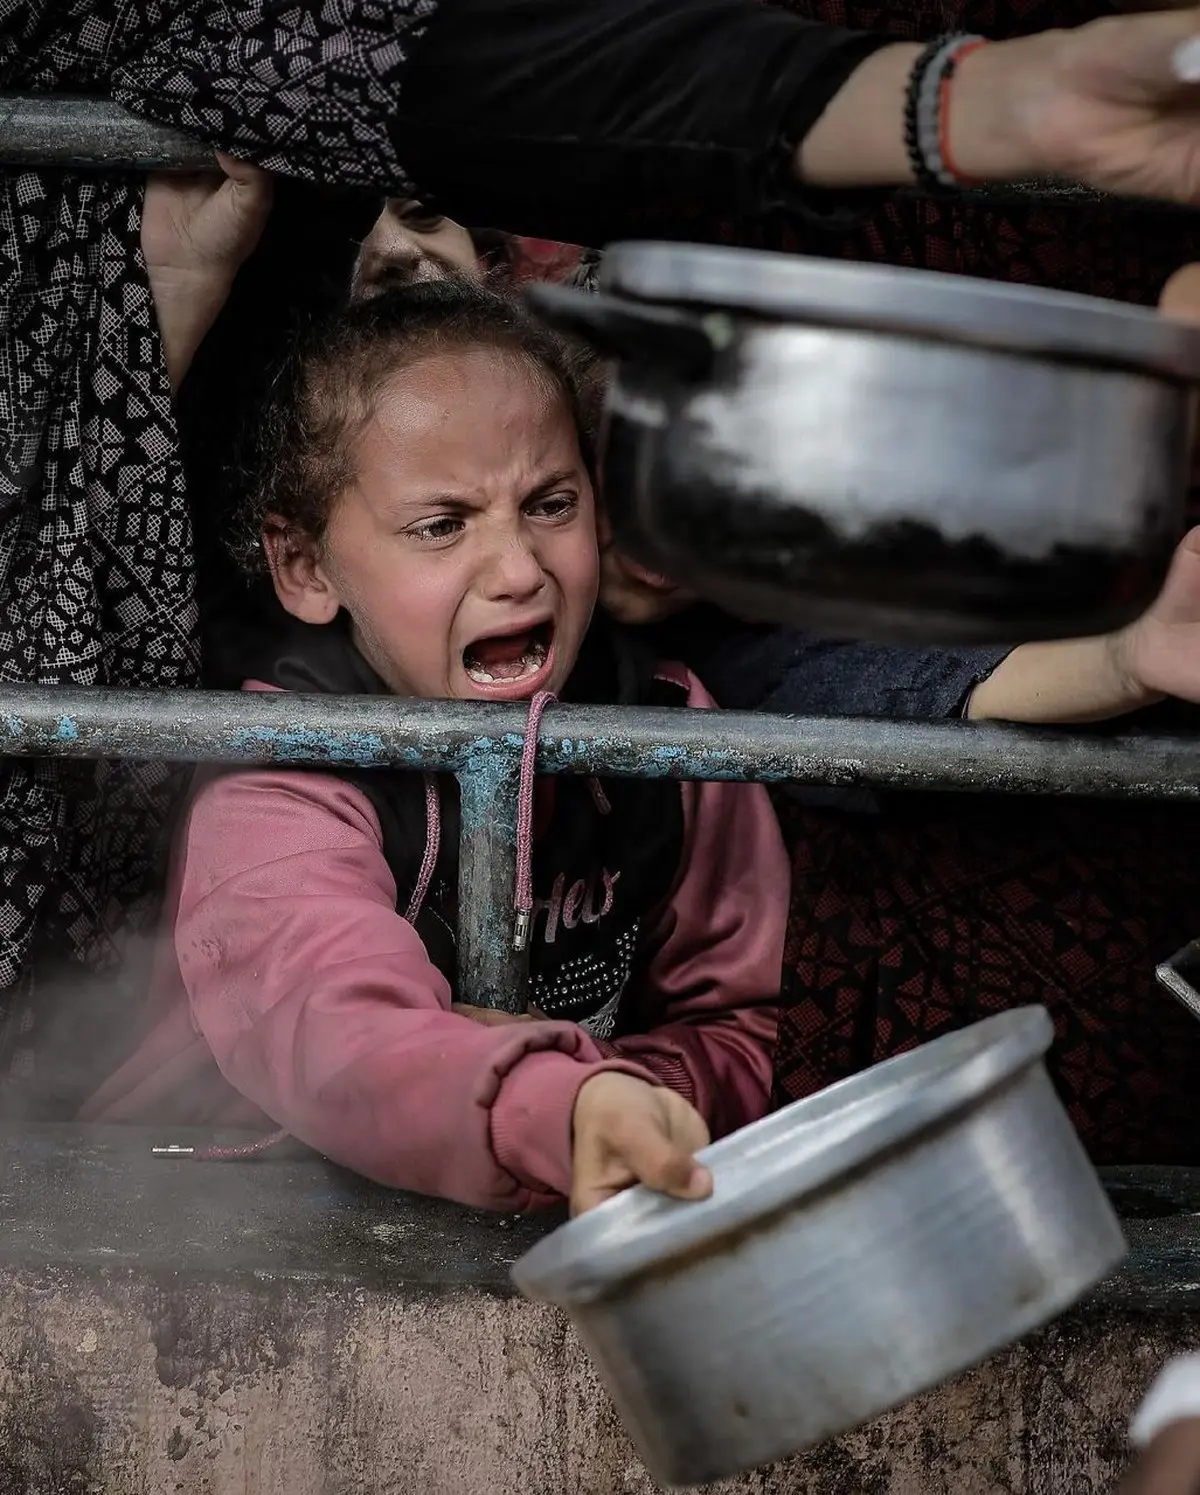 تصاویر بسیار غم انگیز از کودکان فلسطینی | تلاش برای گرفتن غذا +تصاویر